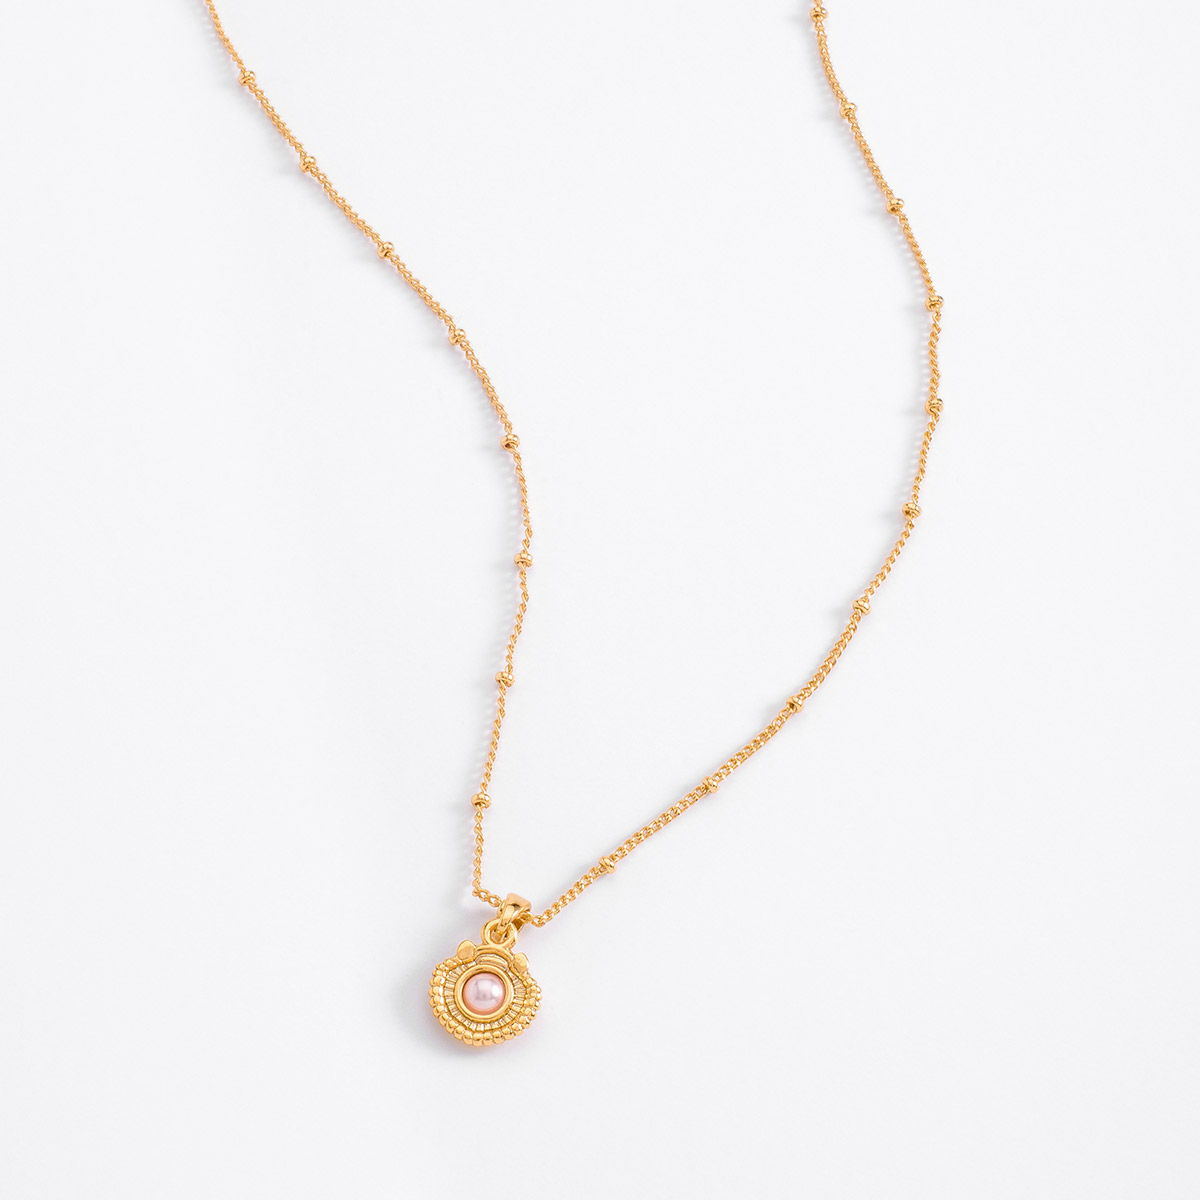 La magia del mar se refleja en este elegante collar en baño de oro con perla en tono cream.
-Collar
-13 cm + 3 cm ext.
-Perla en tono cream